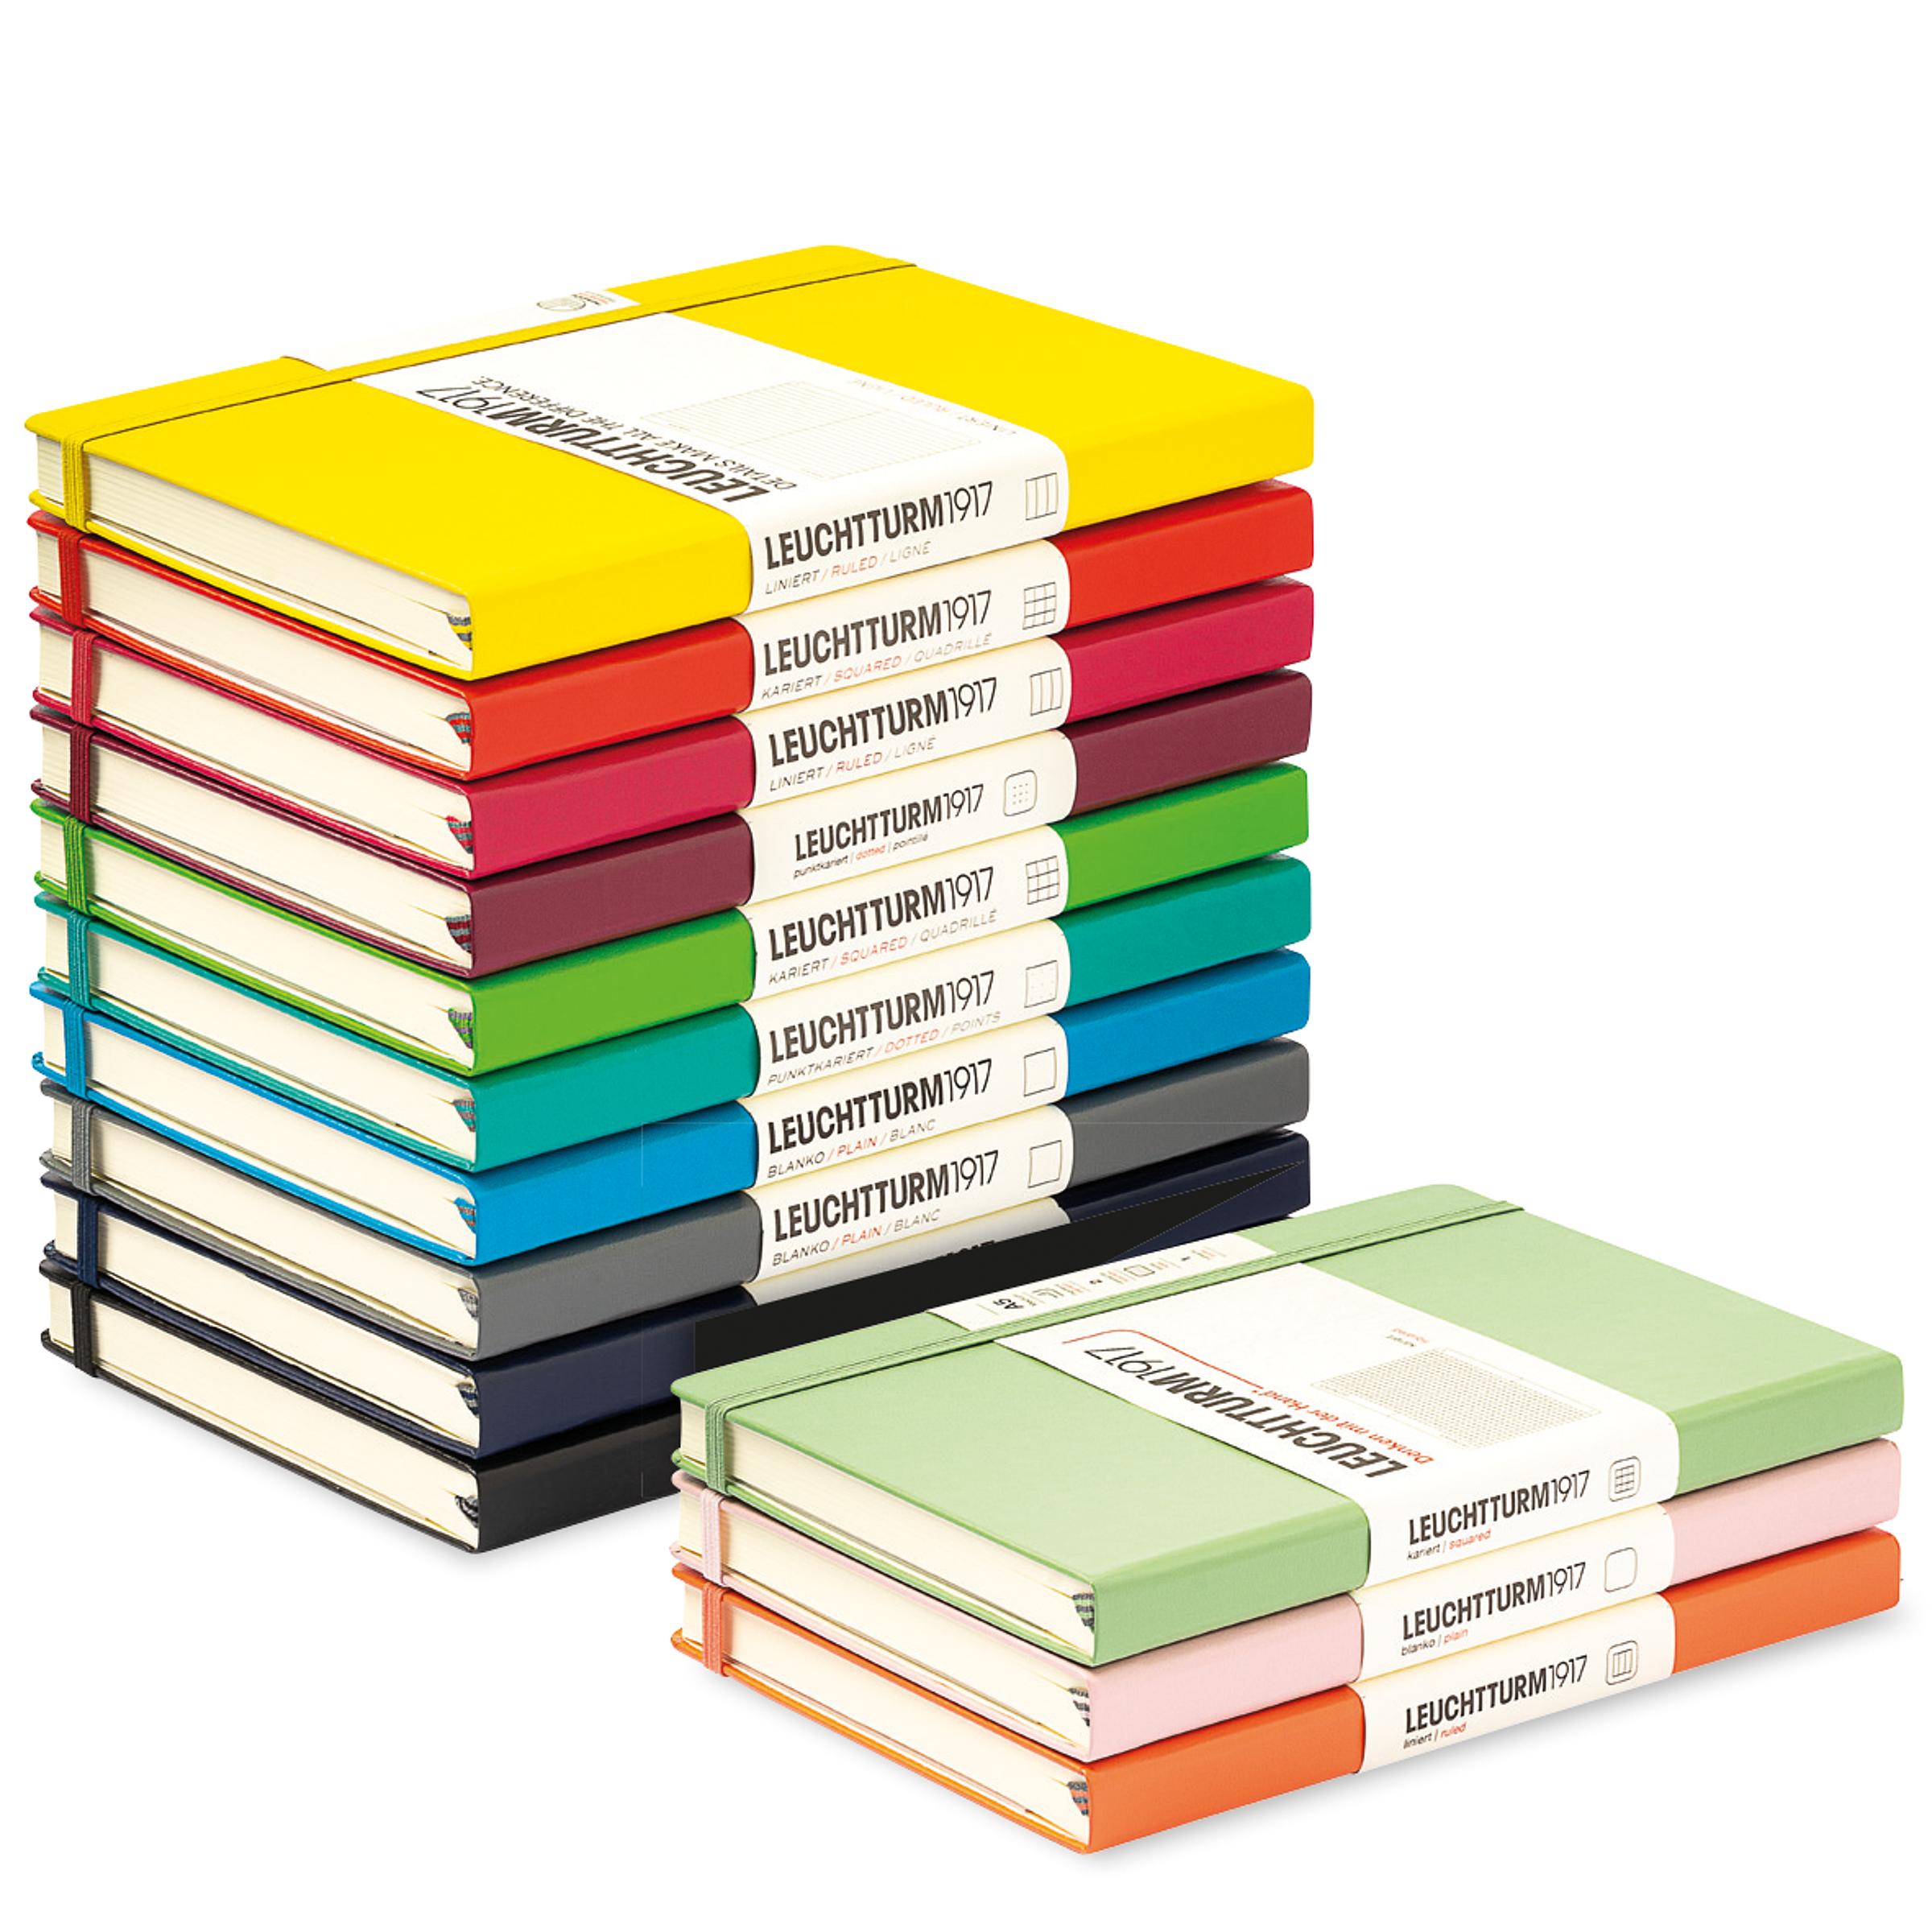 nachhaltiges Notizbuch aus FSC-zertifiziertem Papier mit Verschlussband und praktischer Tasche in Deutschland hergestellt 240 Seiten liniert 13,8 cm x 18,8 cm Liamba Notizbuch